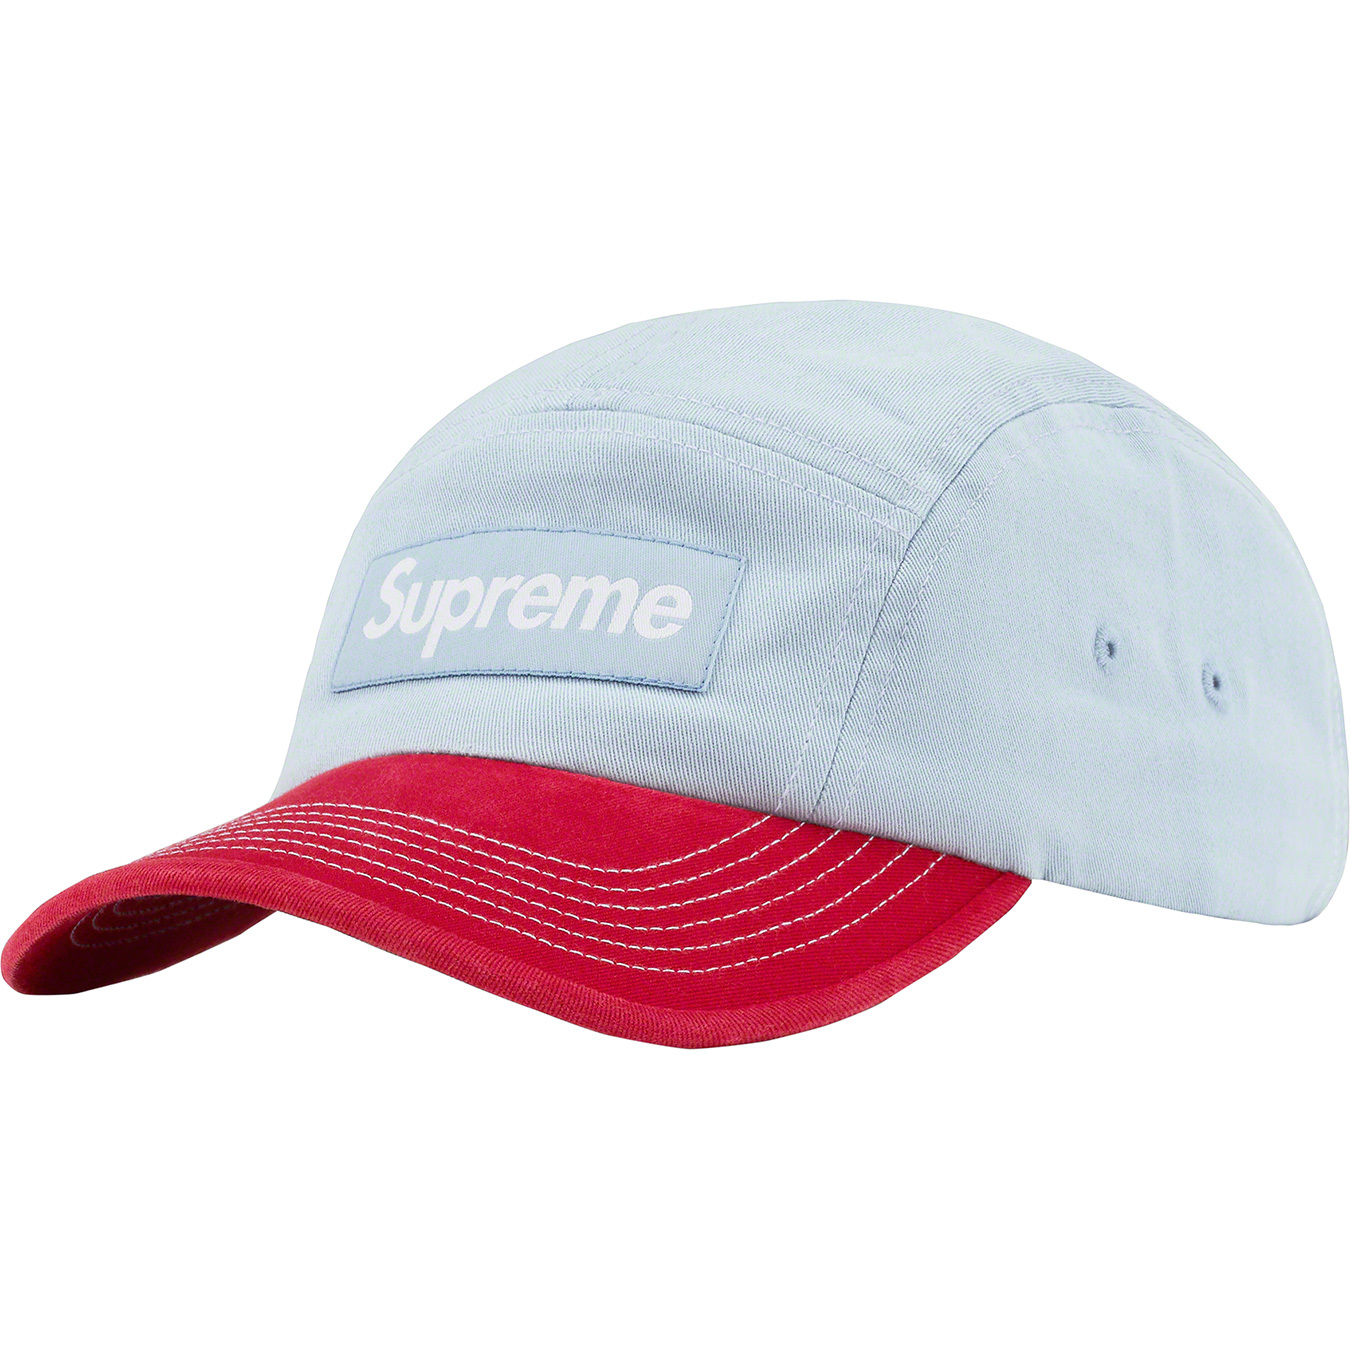 Supreme 2-Tone Twill Camp Cap